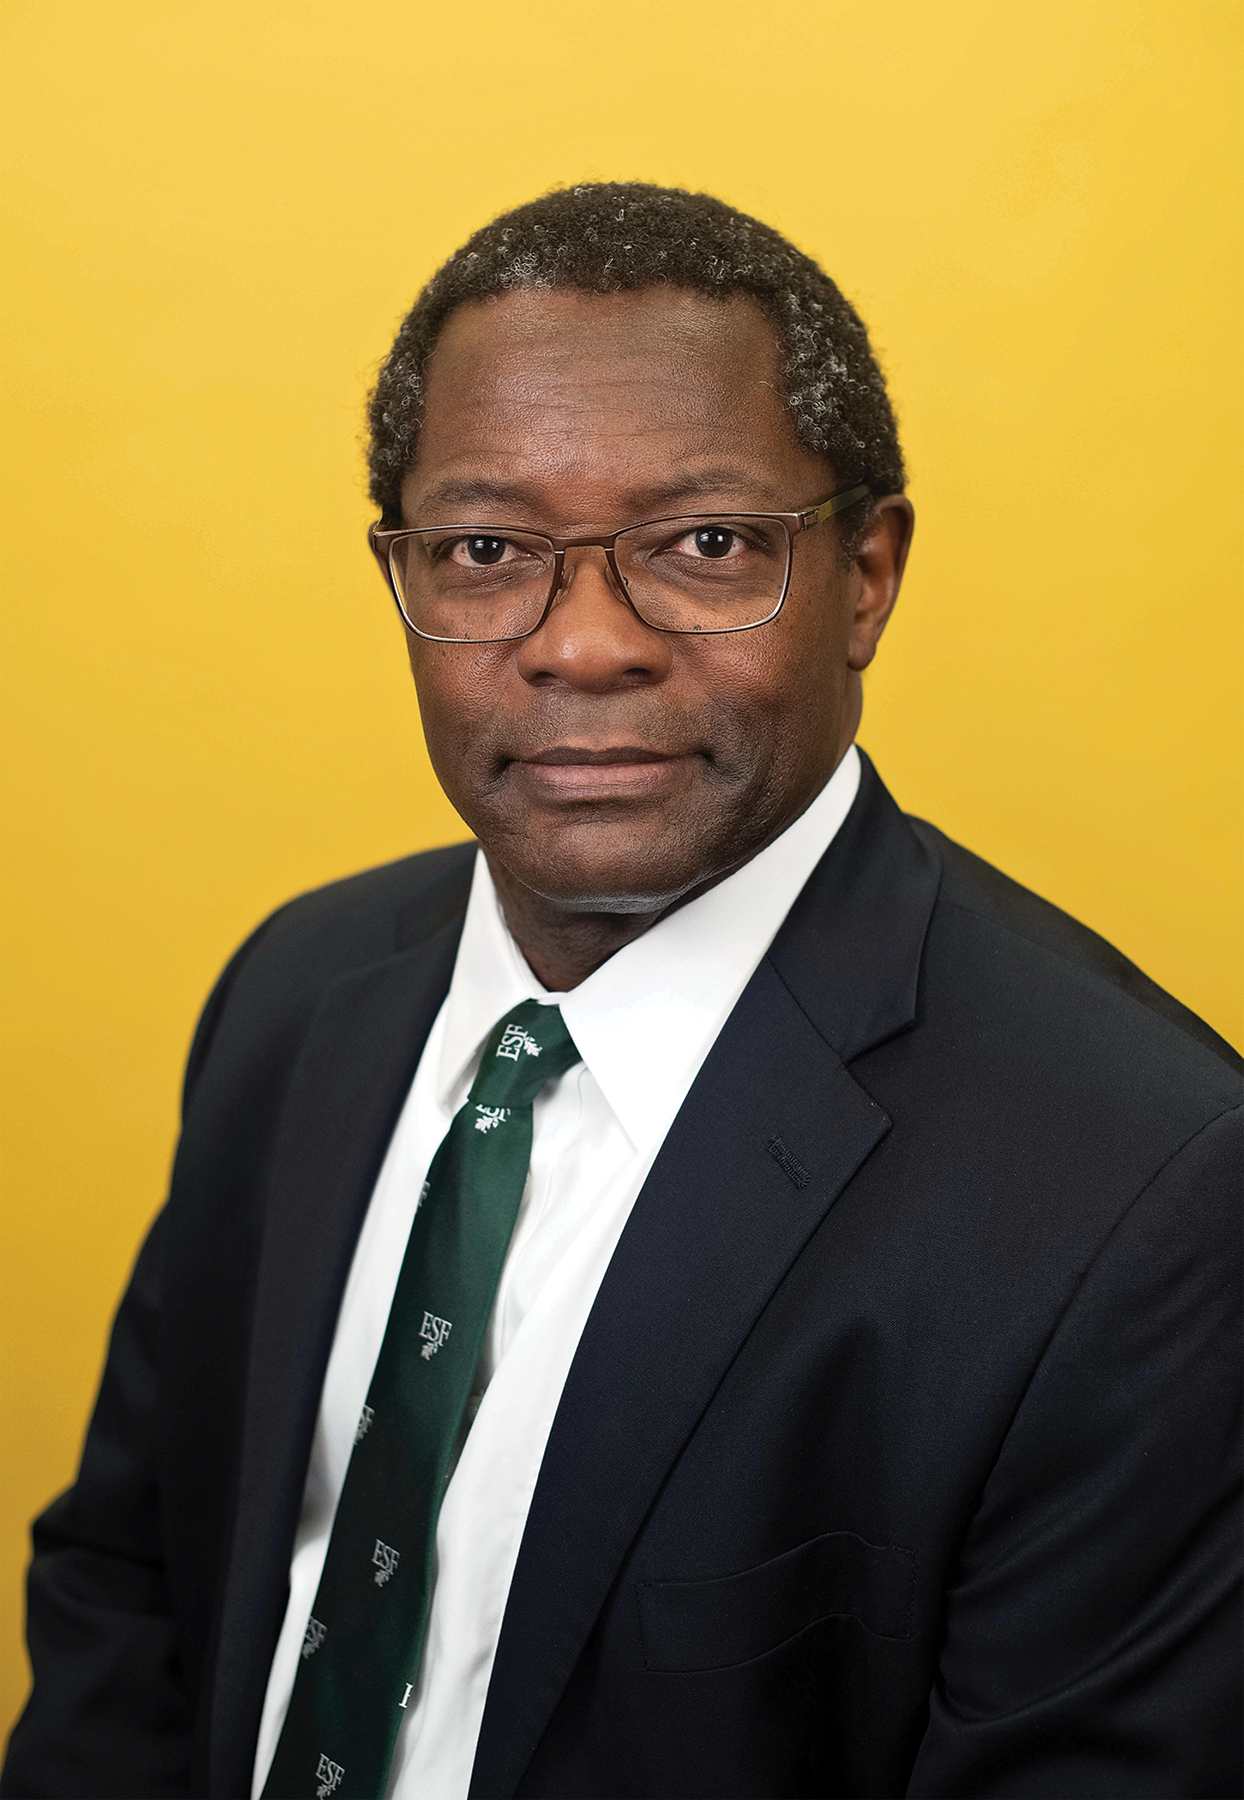 Dr. Mukasa